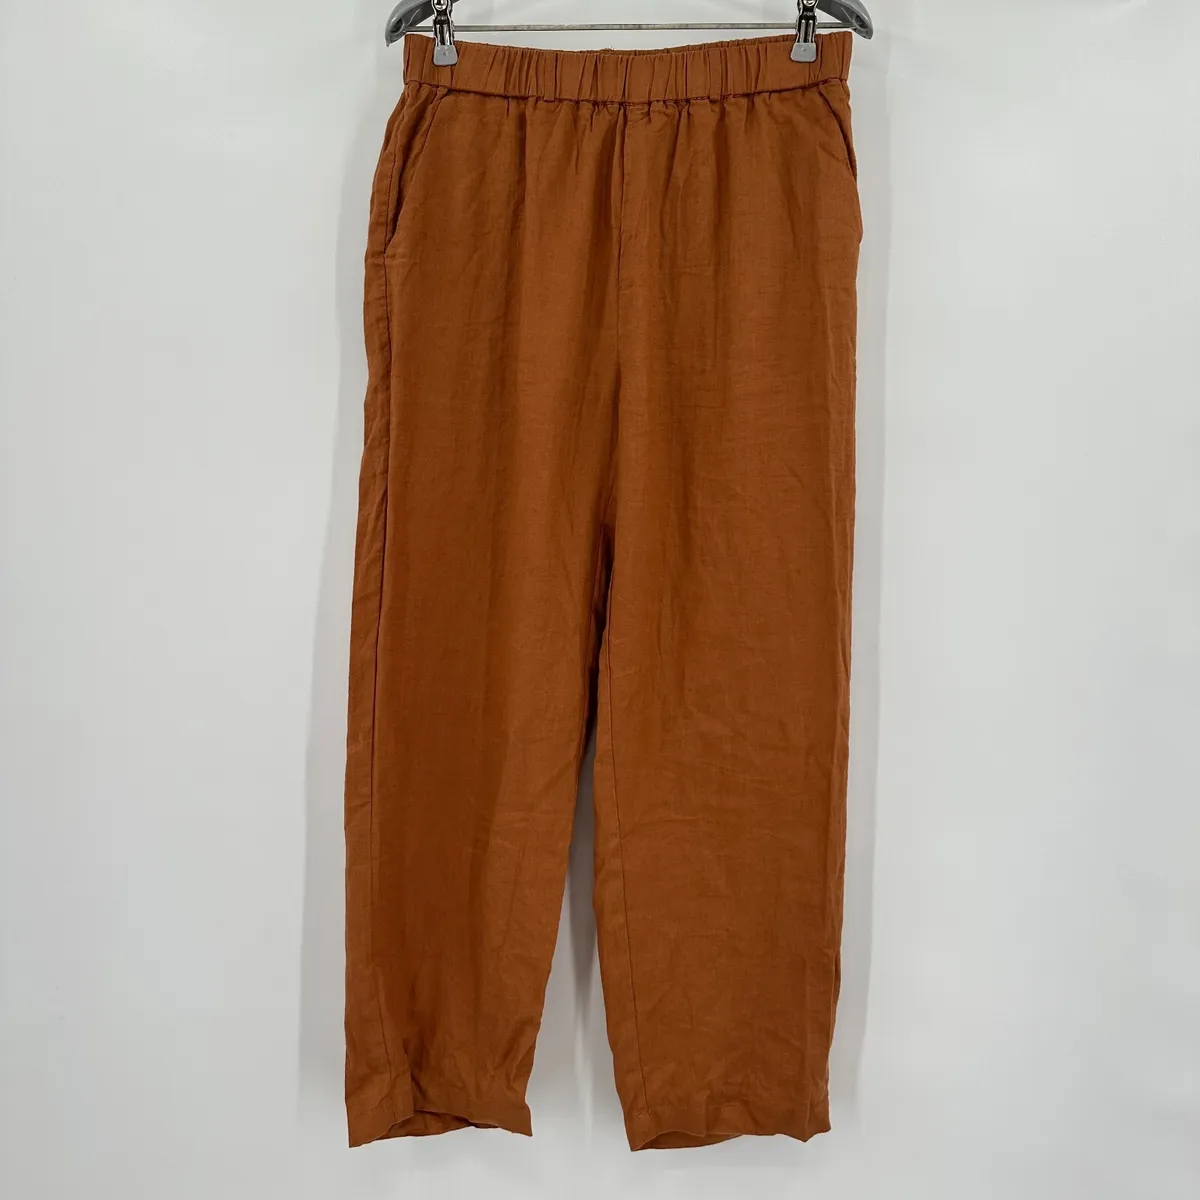 Quince Women's Terracotta European Linen Pants sz S Relaxed